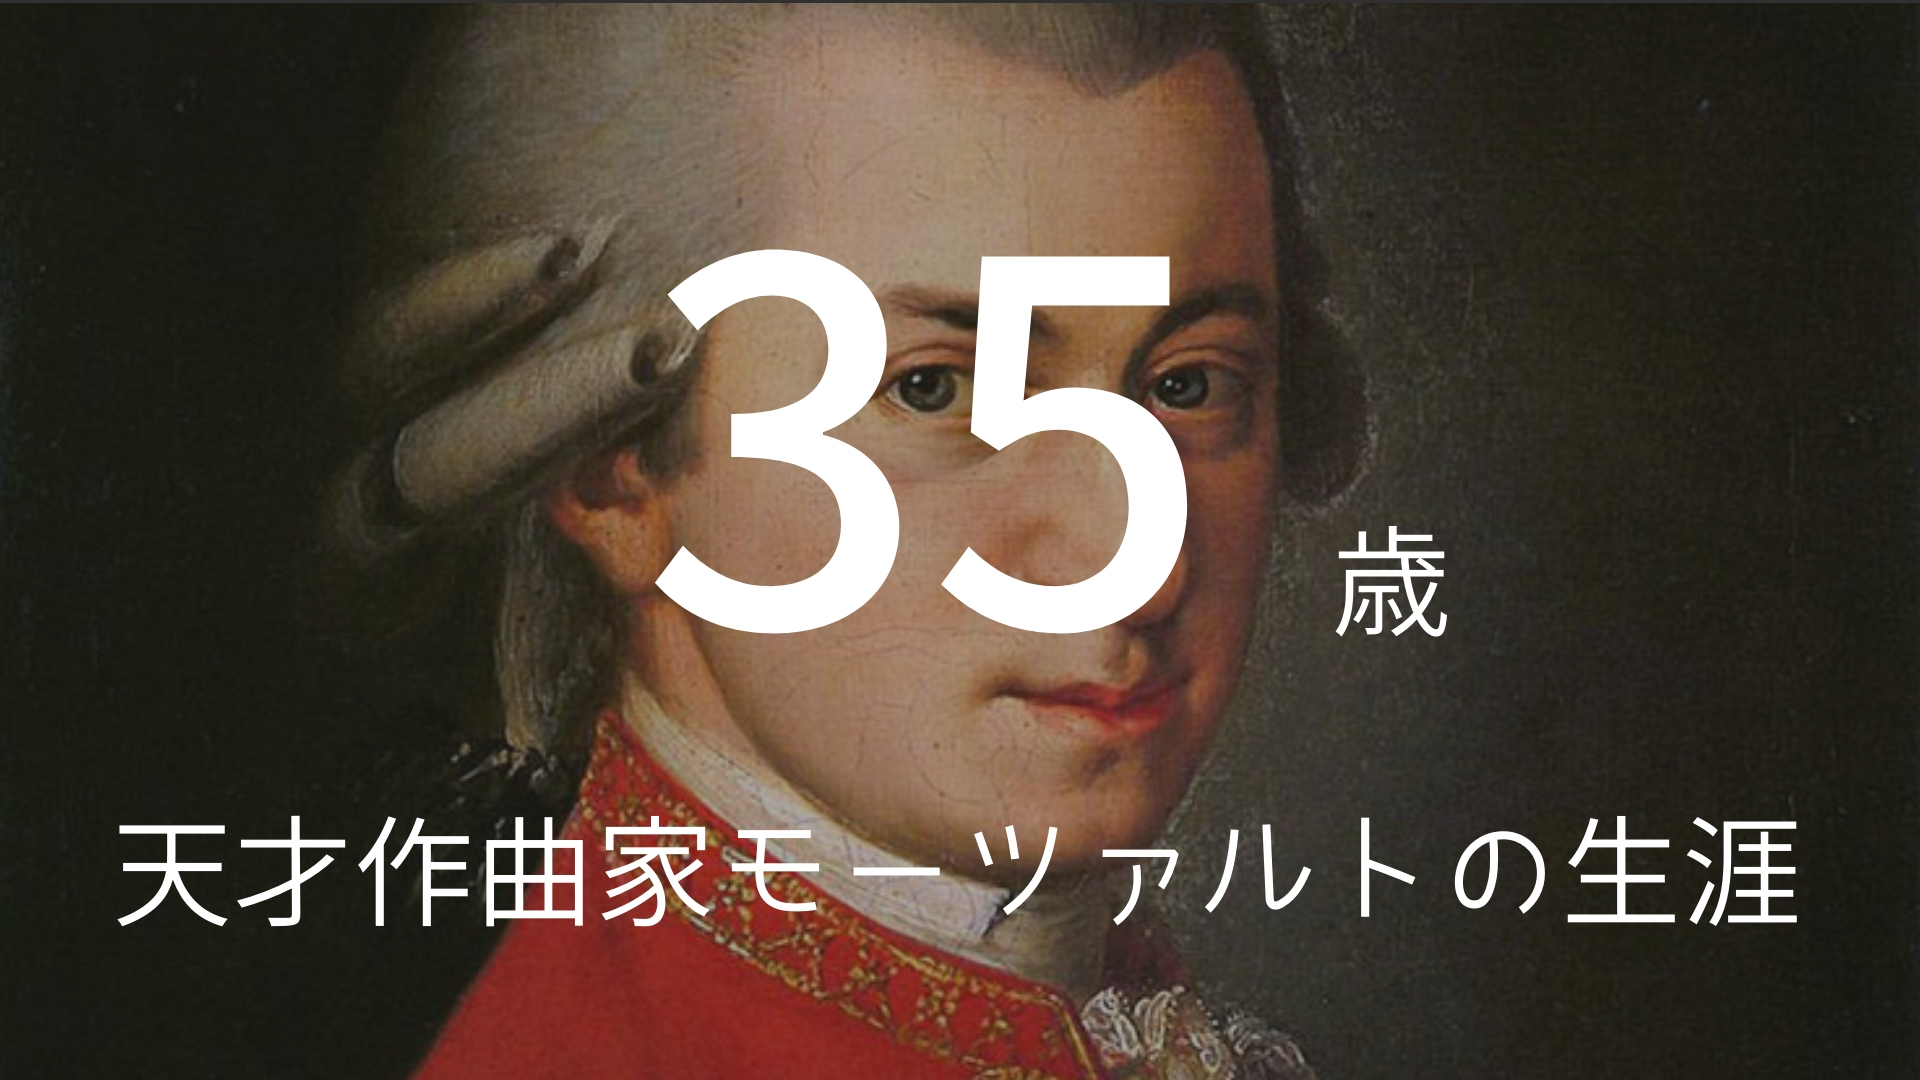 「35歳」 >>> クラシック音楽史上最高の才能。天才作曲家モーツァルトの生涯。